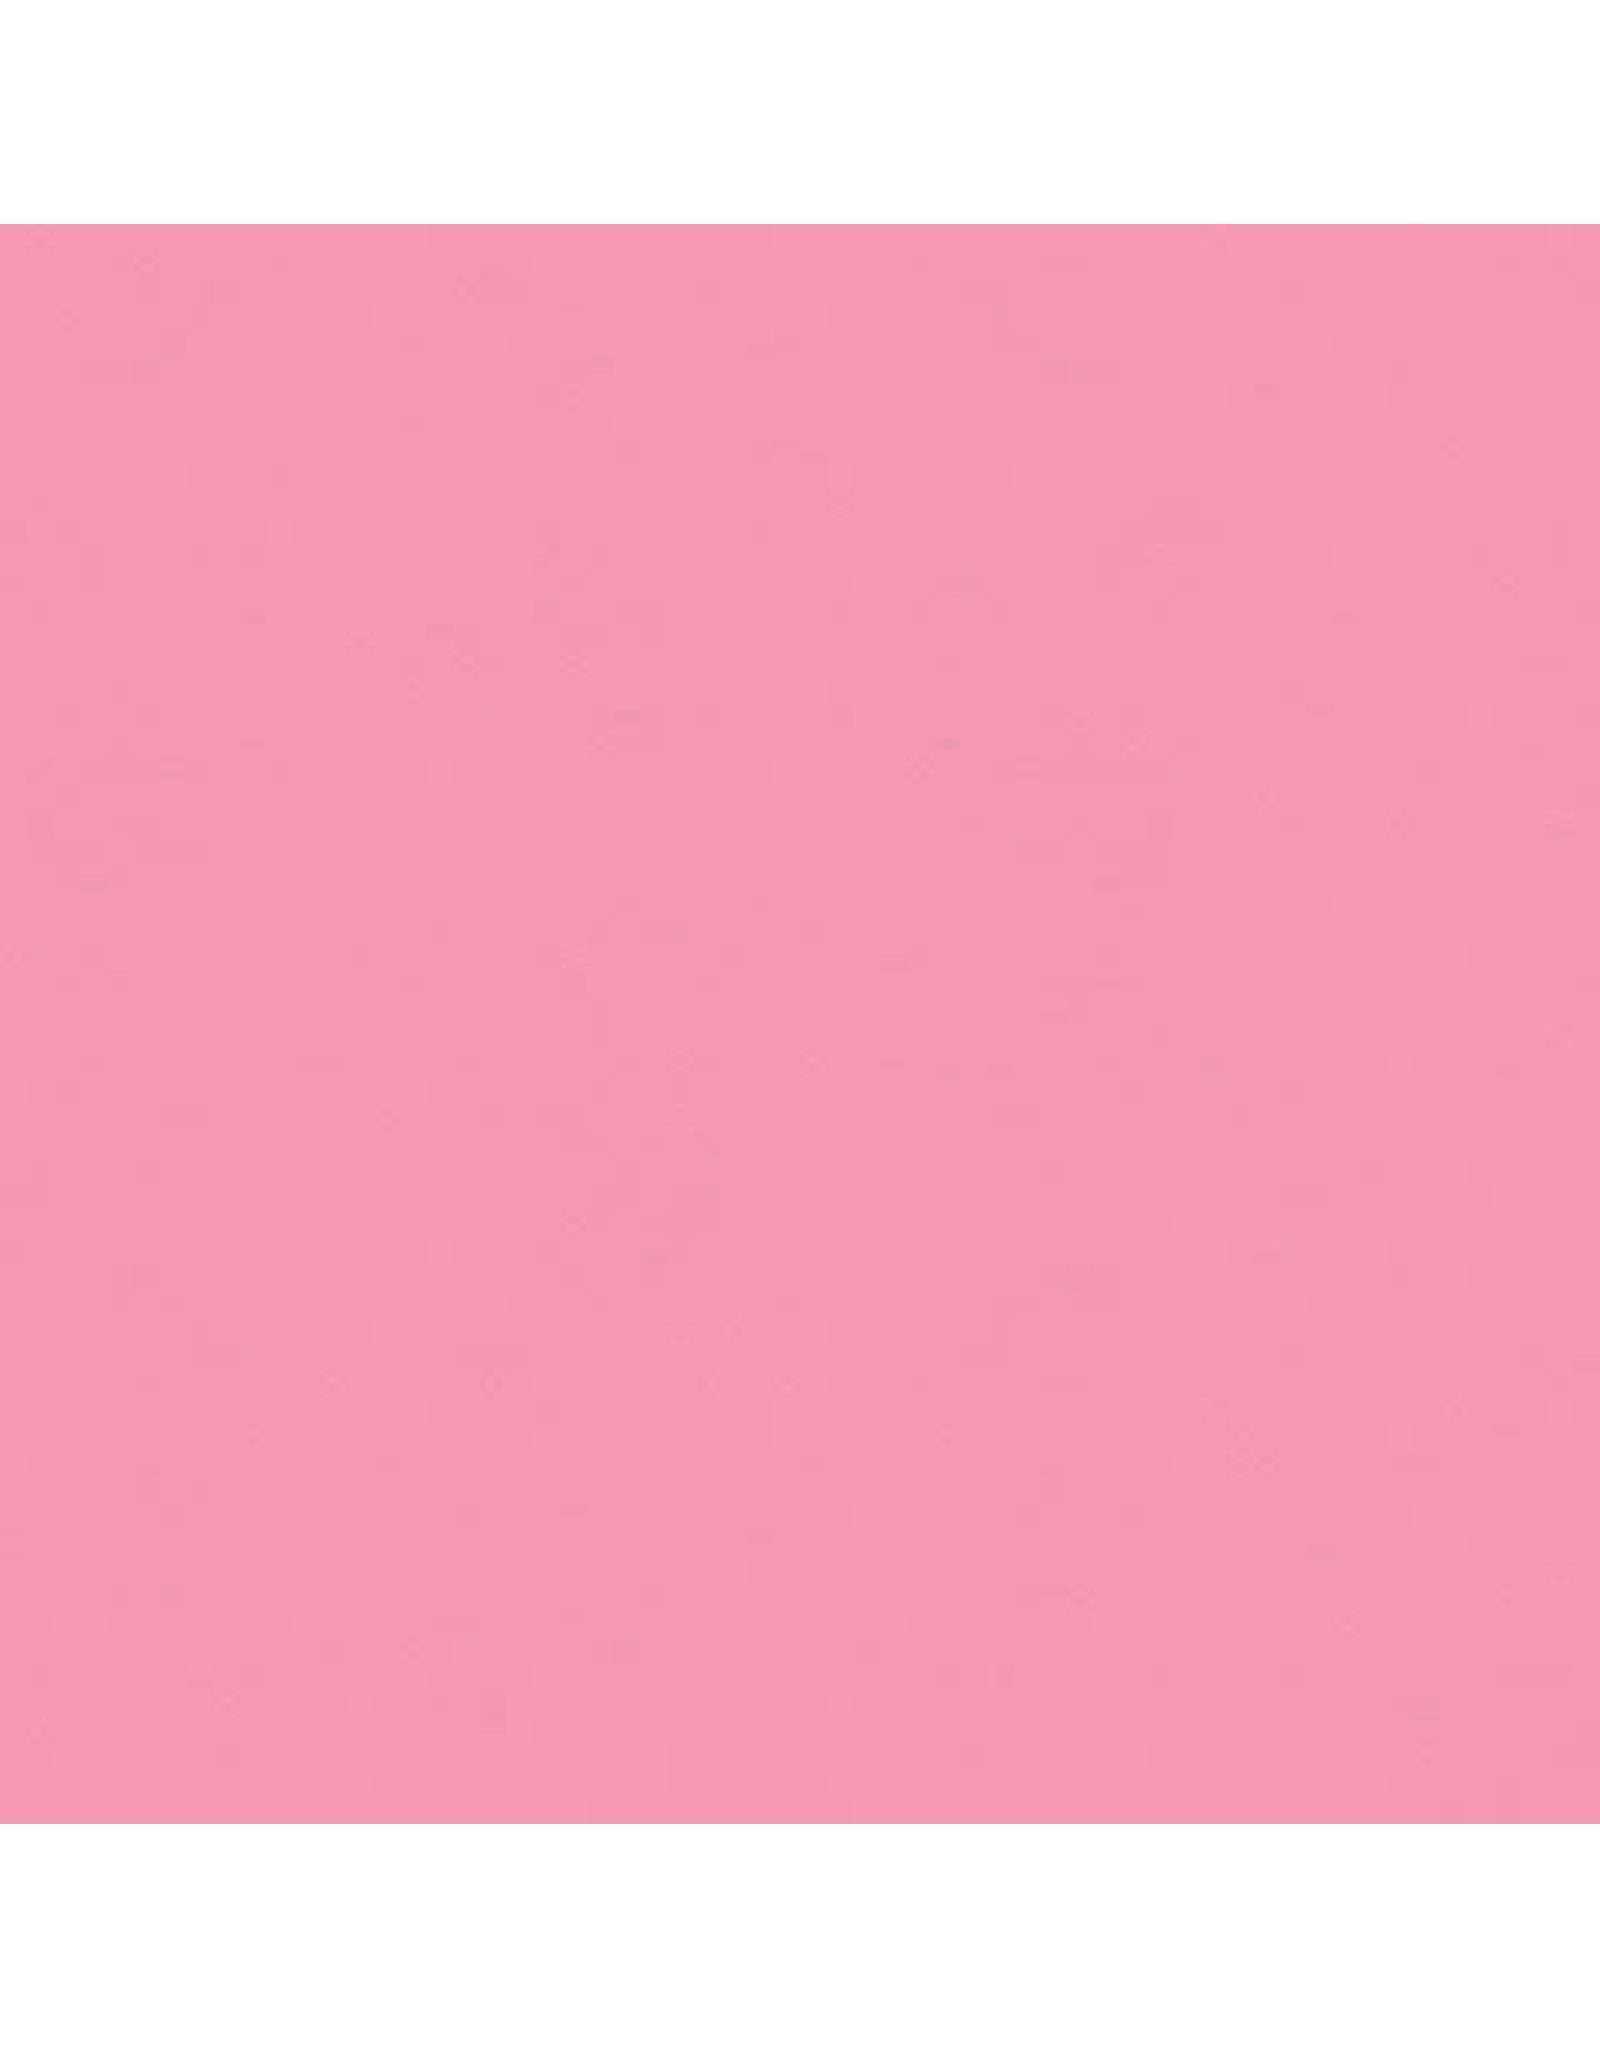 My Colors 8.5x11 Petal Pink - Classic